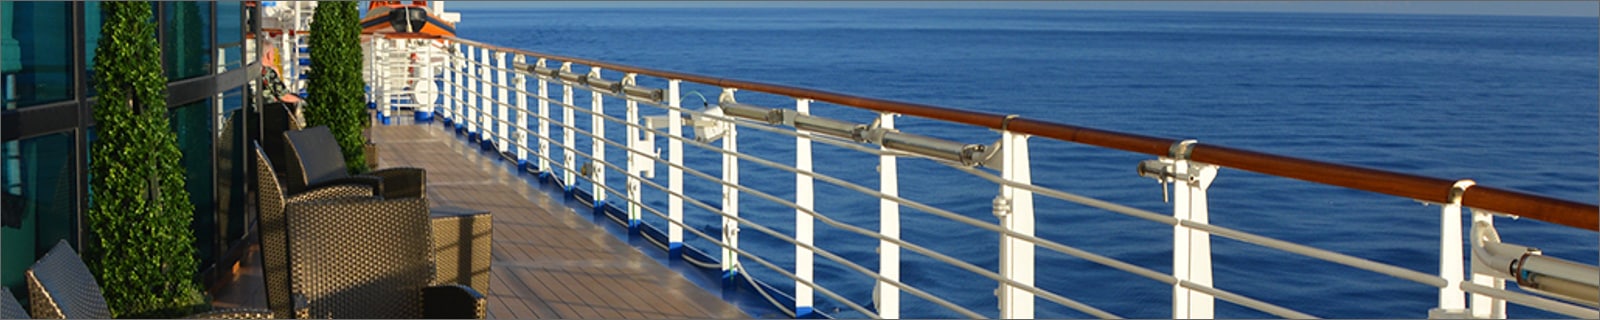 Royal Caribbean Cruises entre dans une nouvelle ère